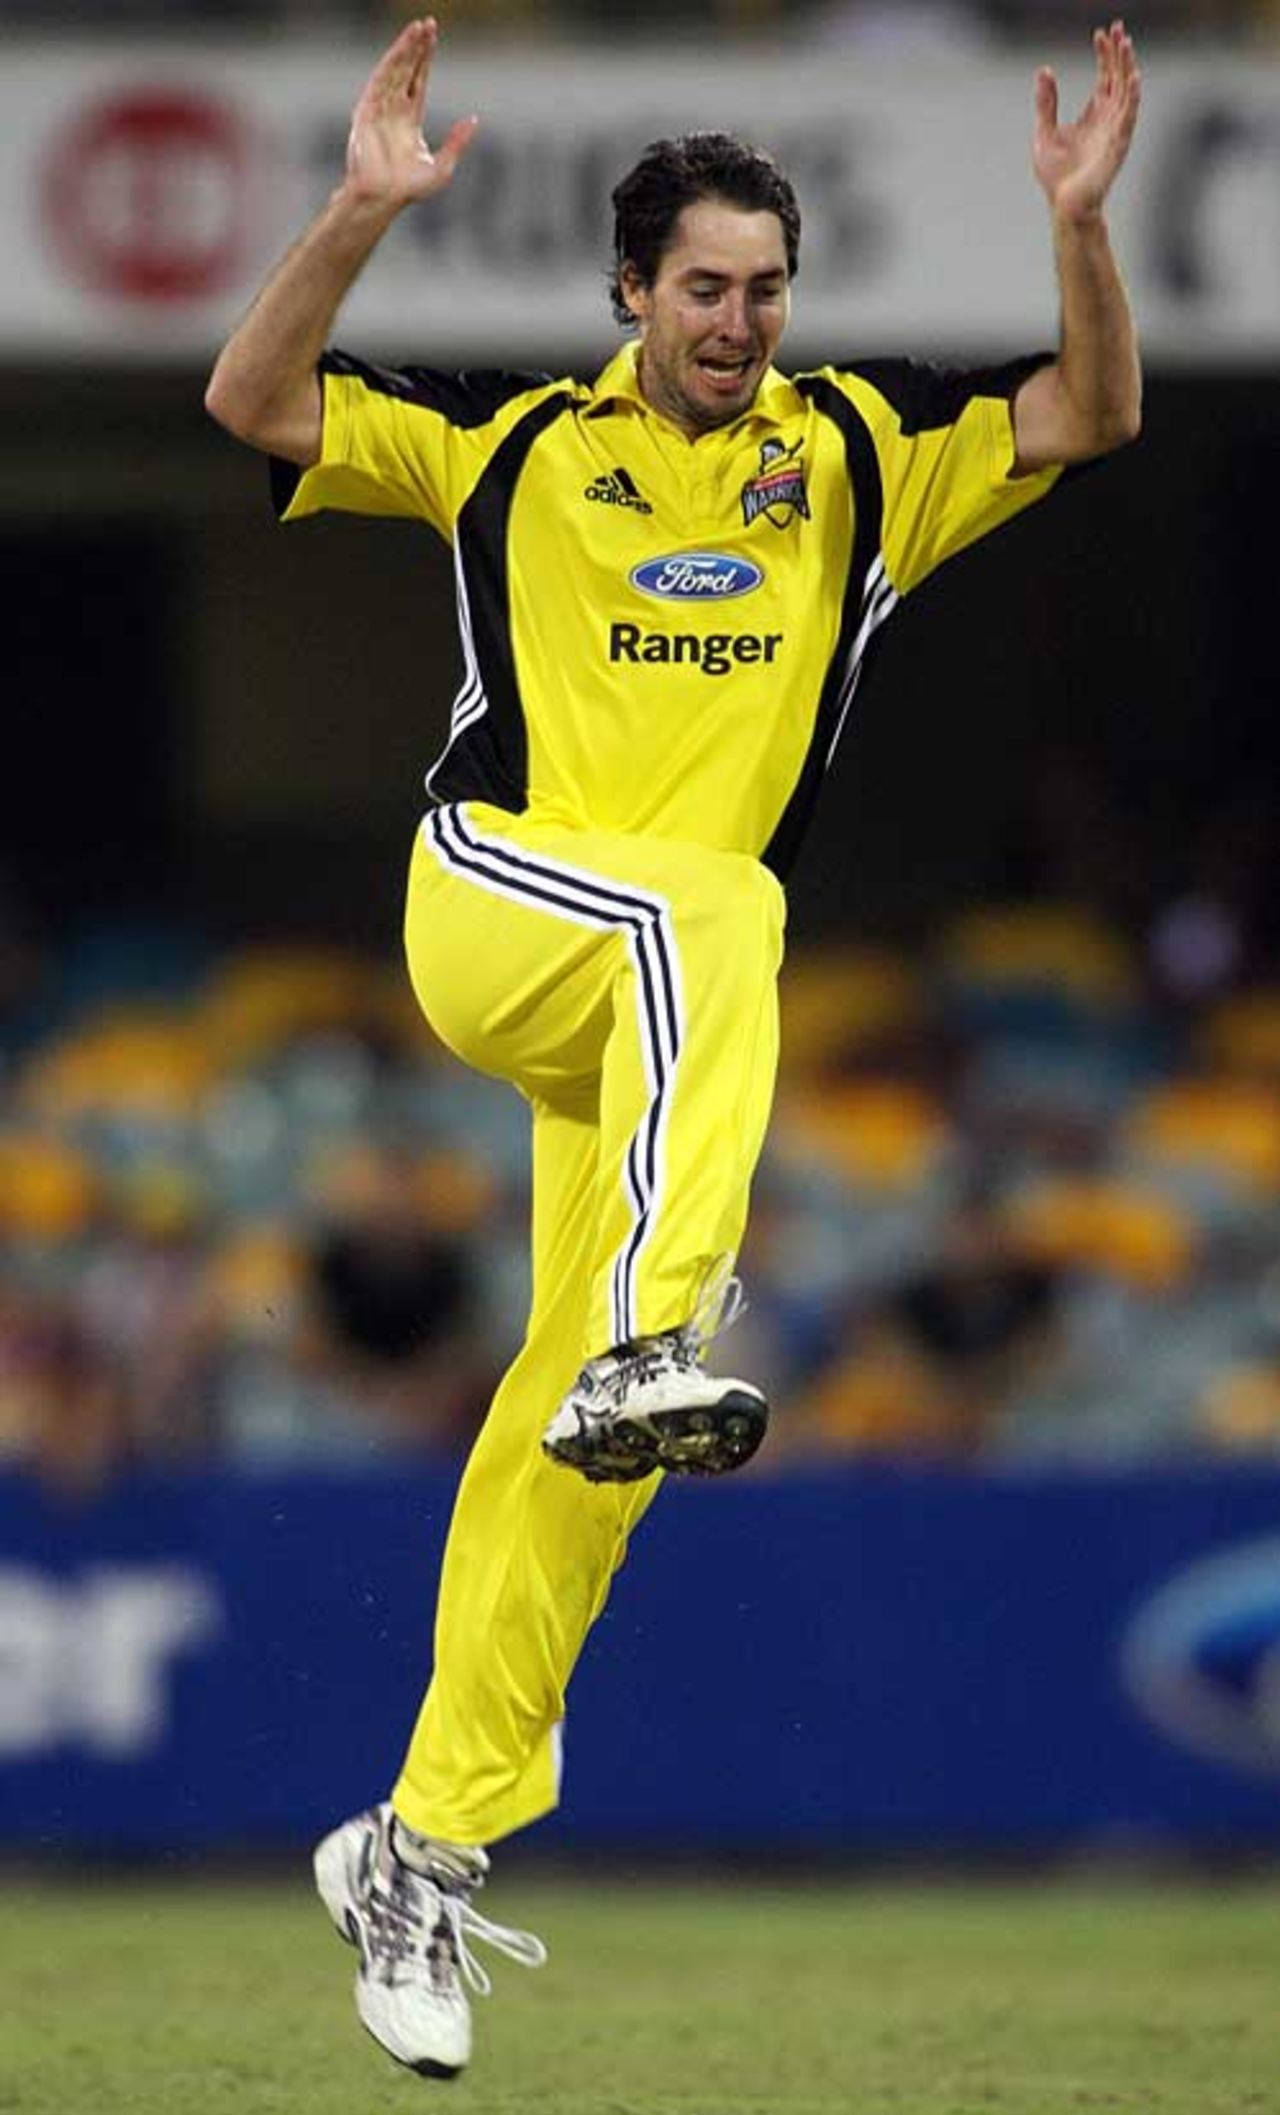 Ben Edmondson took three wickets to help skittle Queensland, Queensland v Western Australia, FR Cup, Brisbane, February 16, 2008